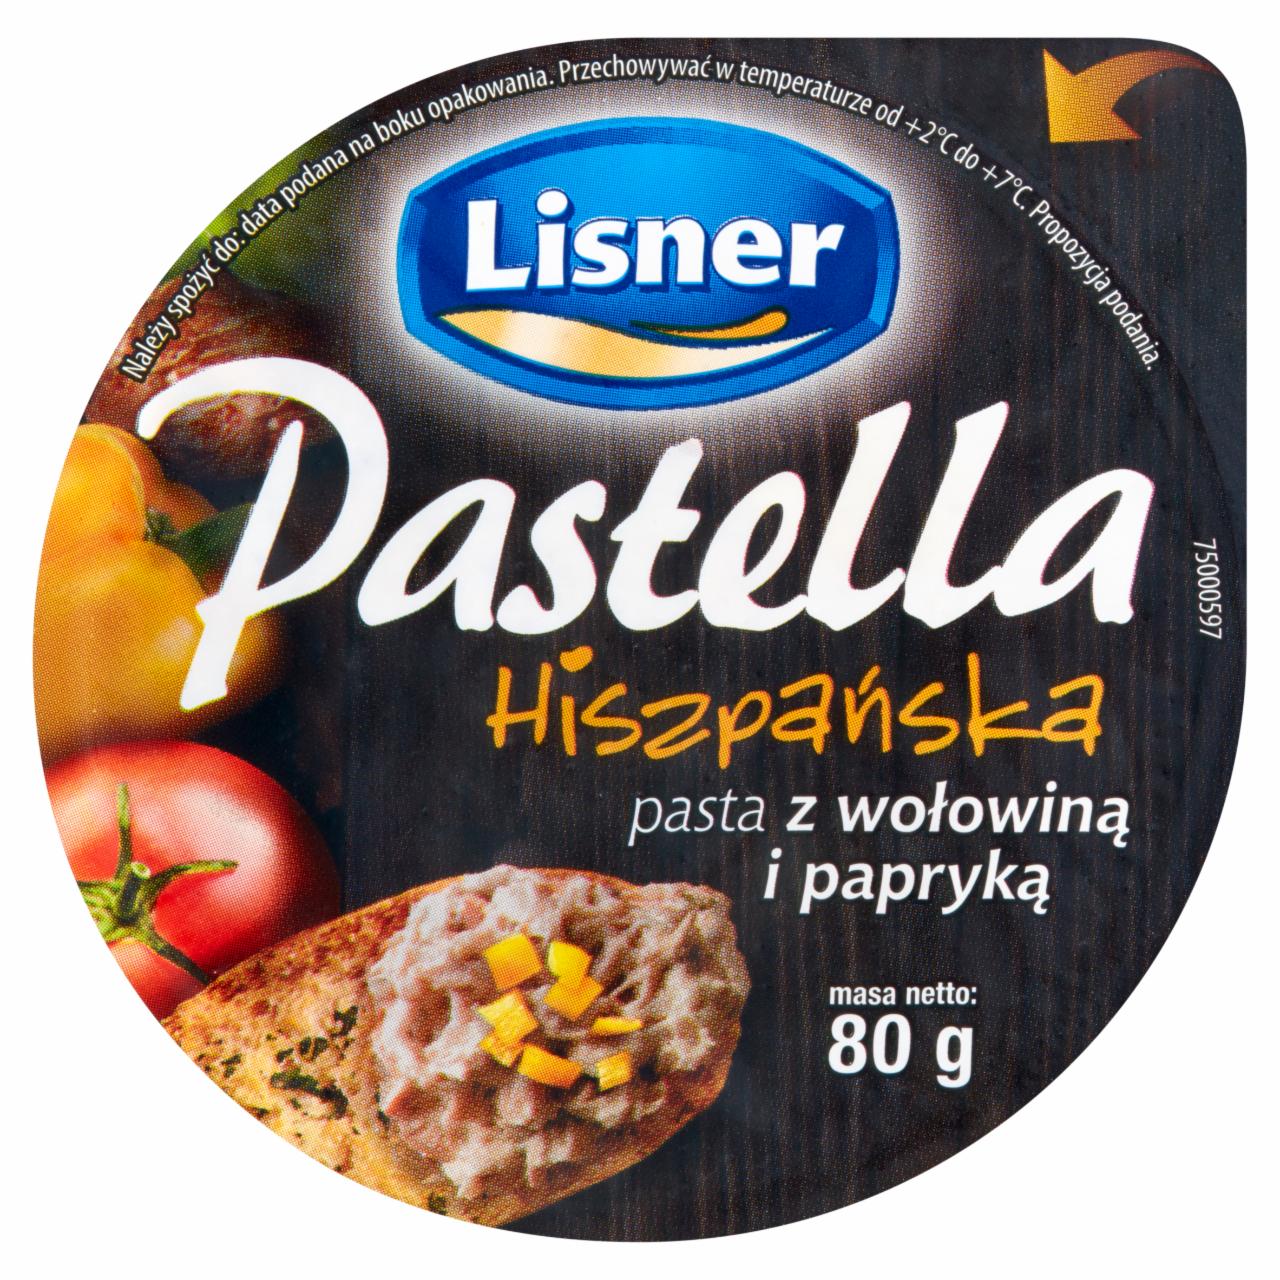 Zdjęcia - Lisner Pastella Hiszpańska Pasta z wołowiną i papryką 80 g